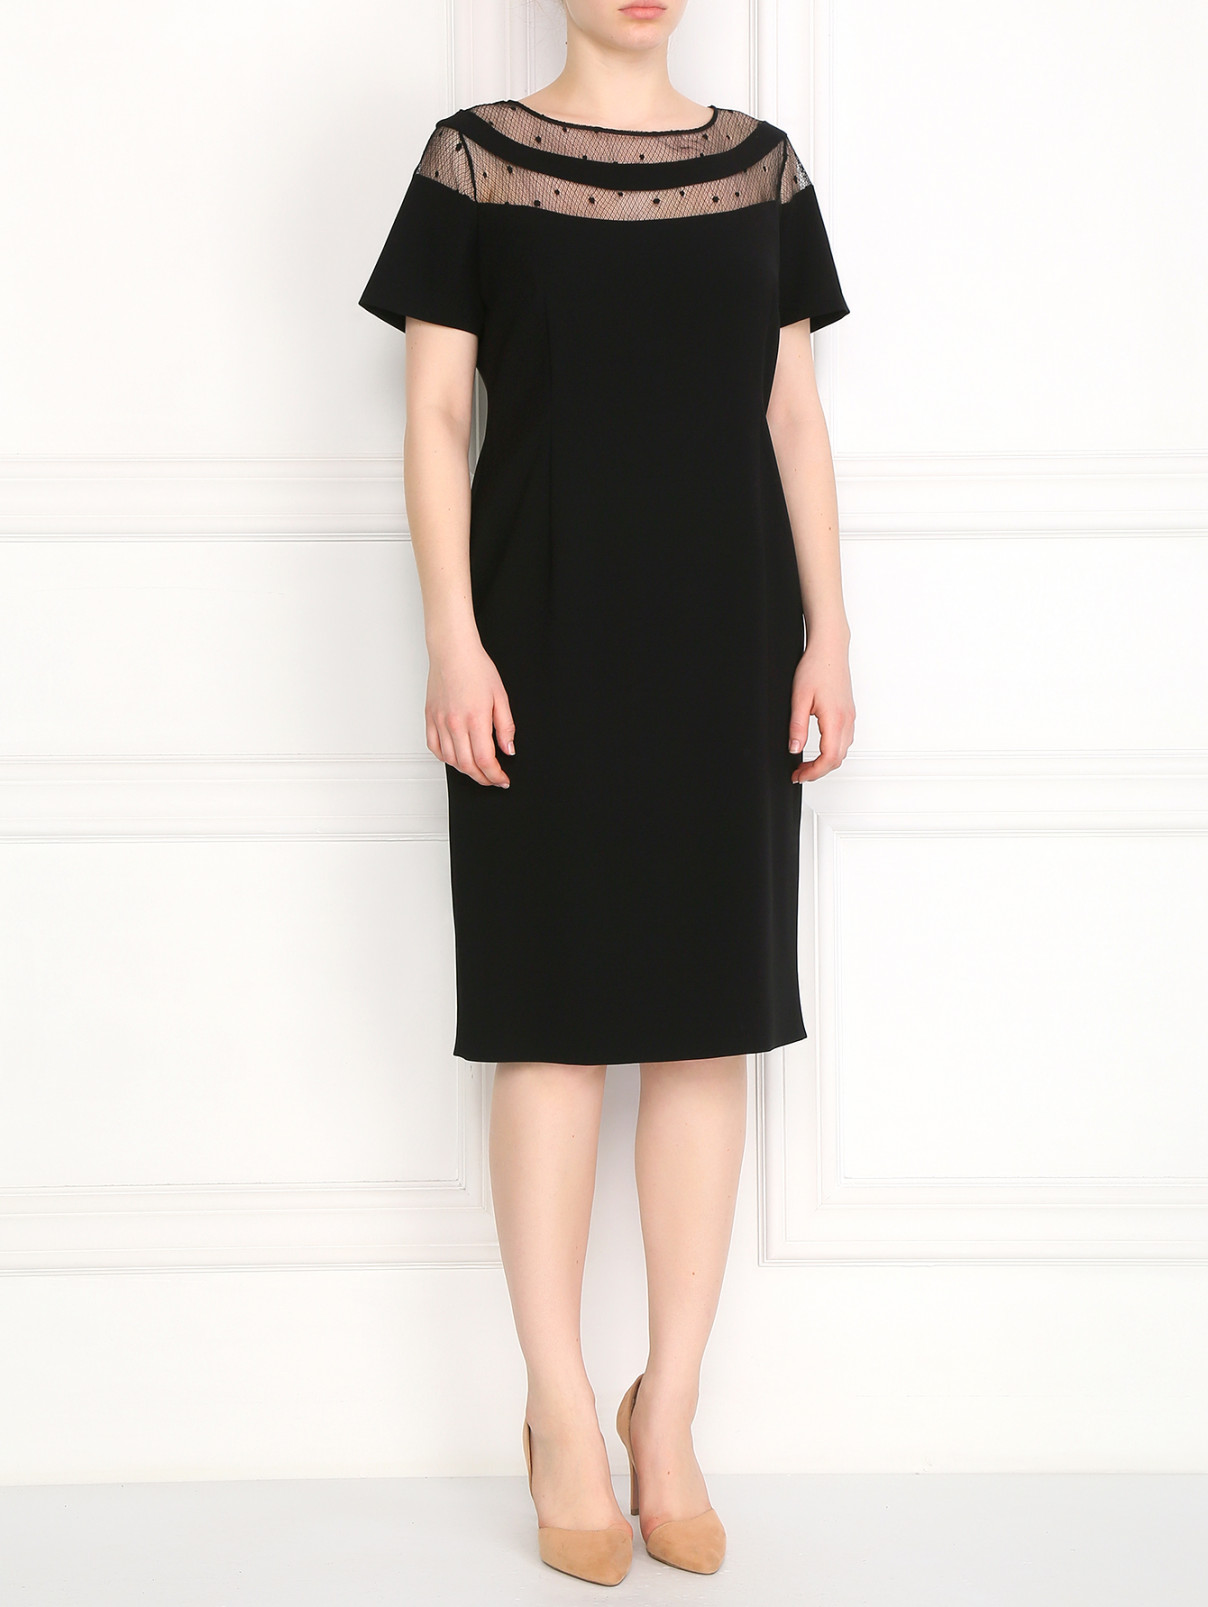 Платье-футляр со вставками из кружева Marina Rinaldi  –  Модель Общий вид  – Цвет:  Черный